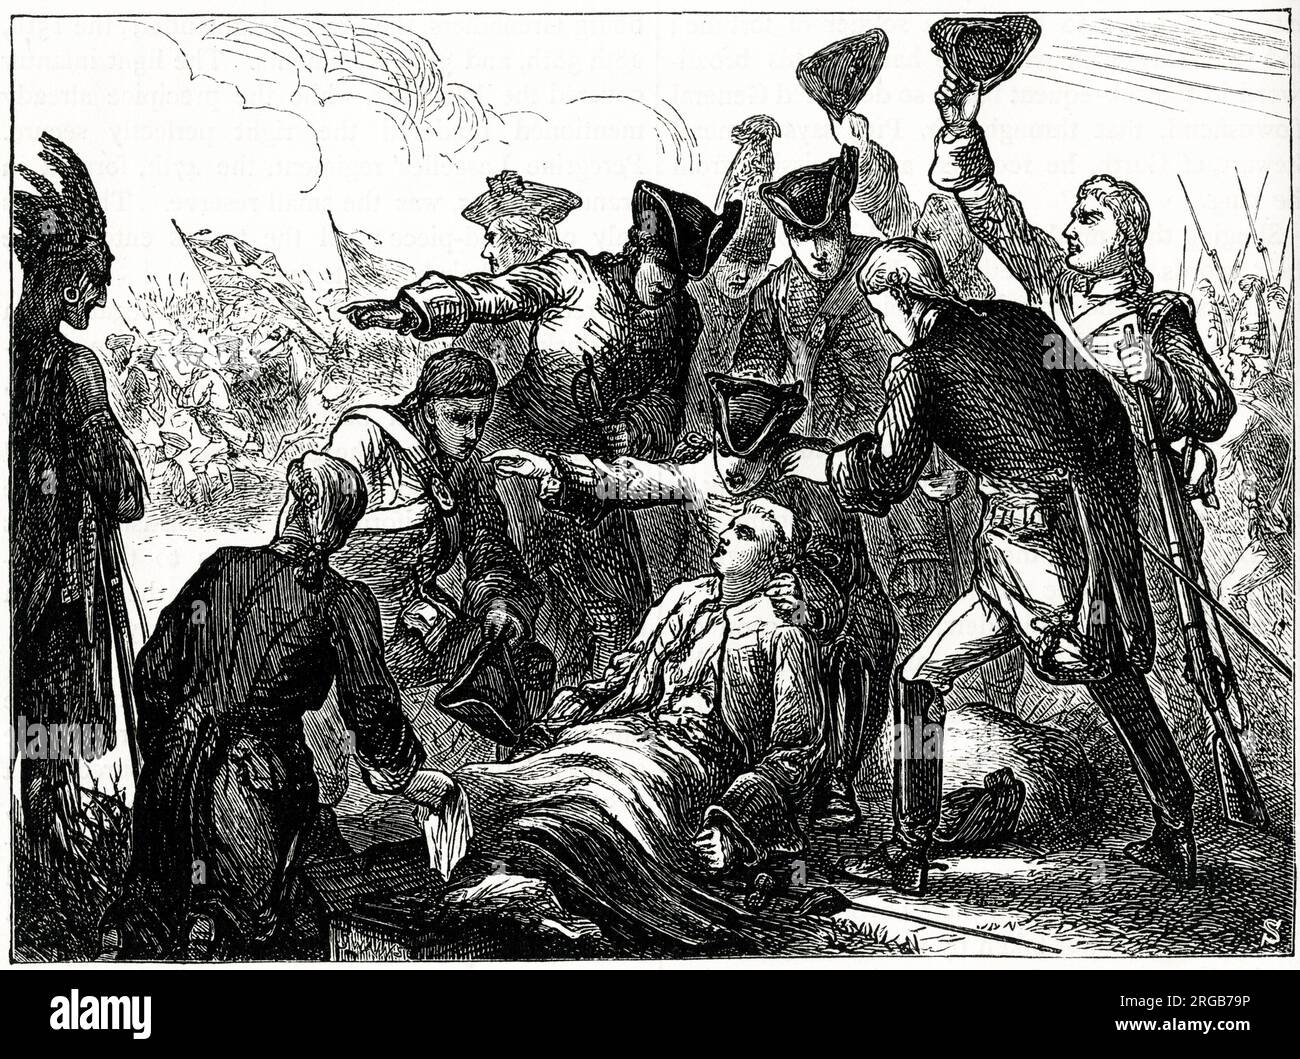 Tod von General James Wolfe, Schlacht von Quebec (Schlacht von Abraham), 13. September 1759, während des Französischen und Indischen Krieges (1754-1763). Stockfoto